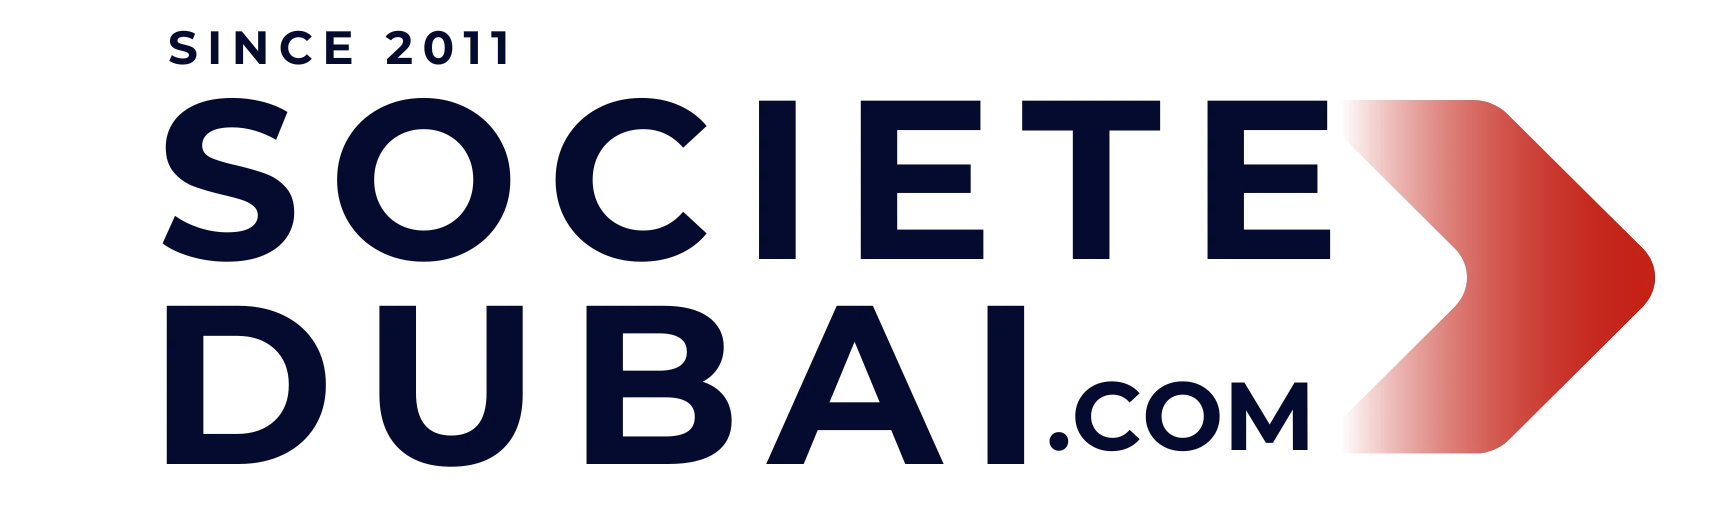 SocieteDubai Logo